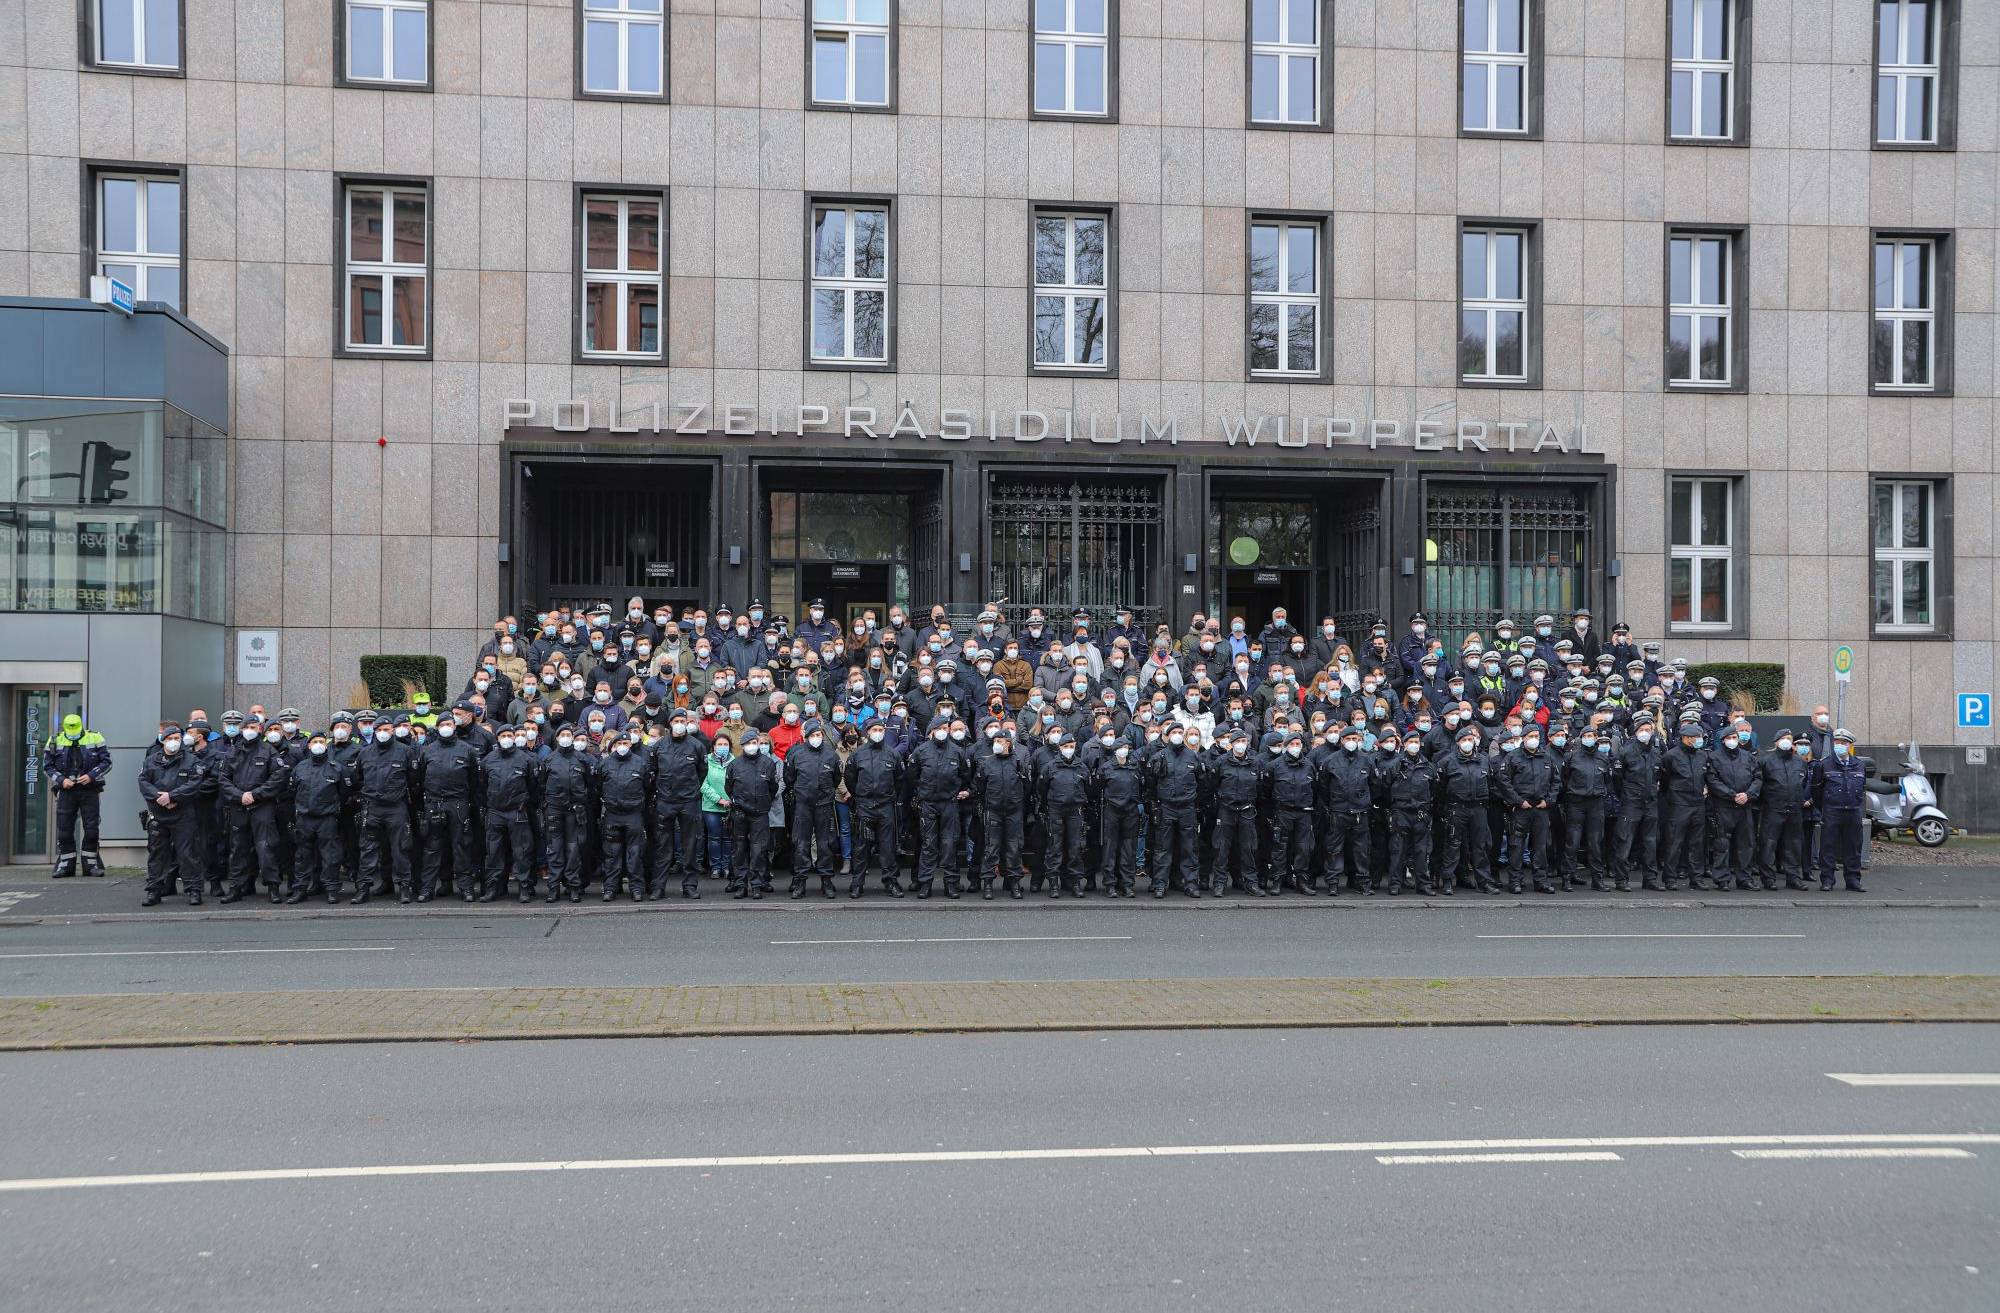  Die Wuppertaler Polizei am Freitagvormittag vor dem Präsidium. 